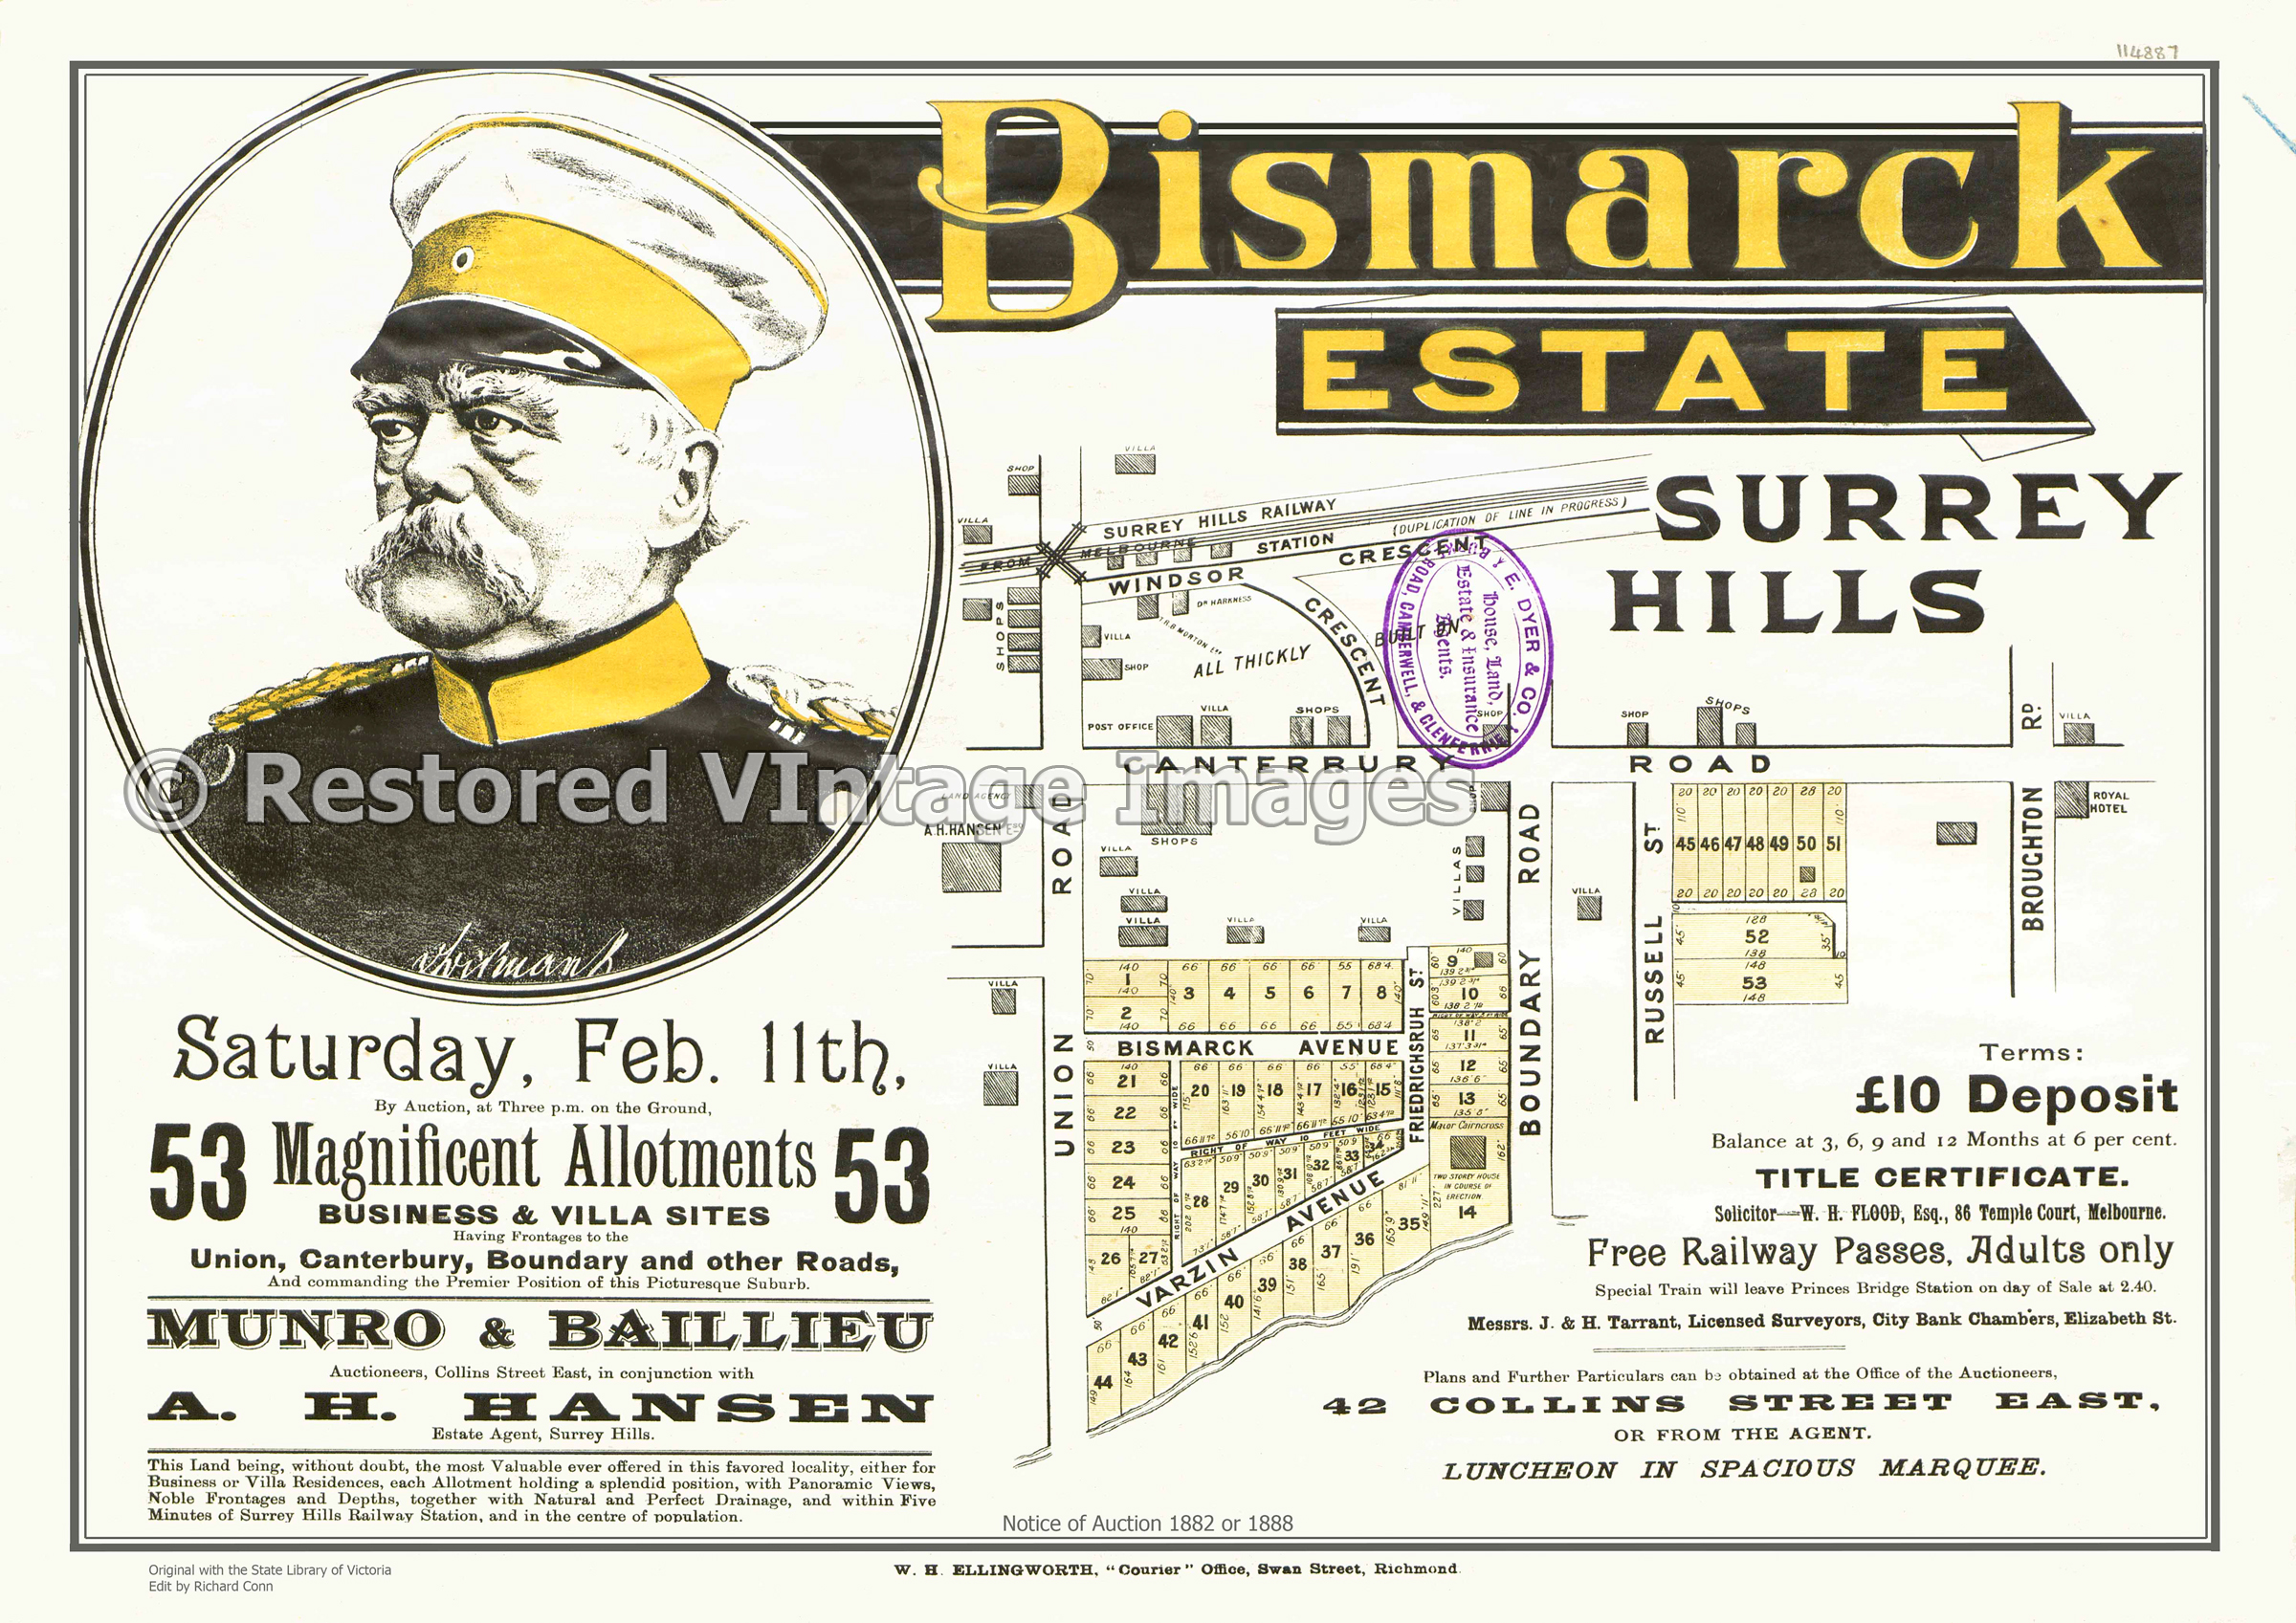 Bismark Estate 1888 – Surrey Hills